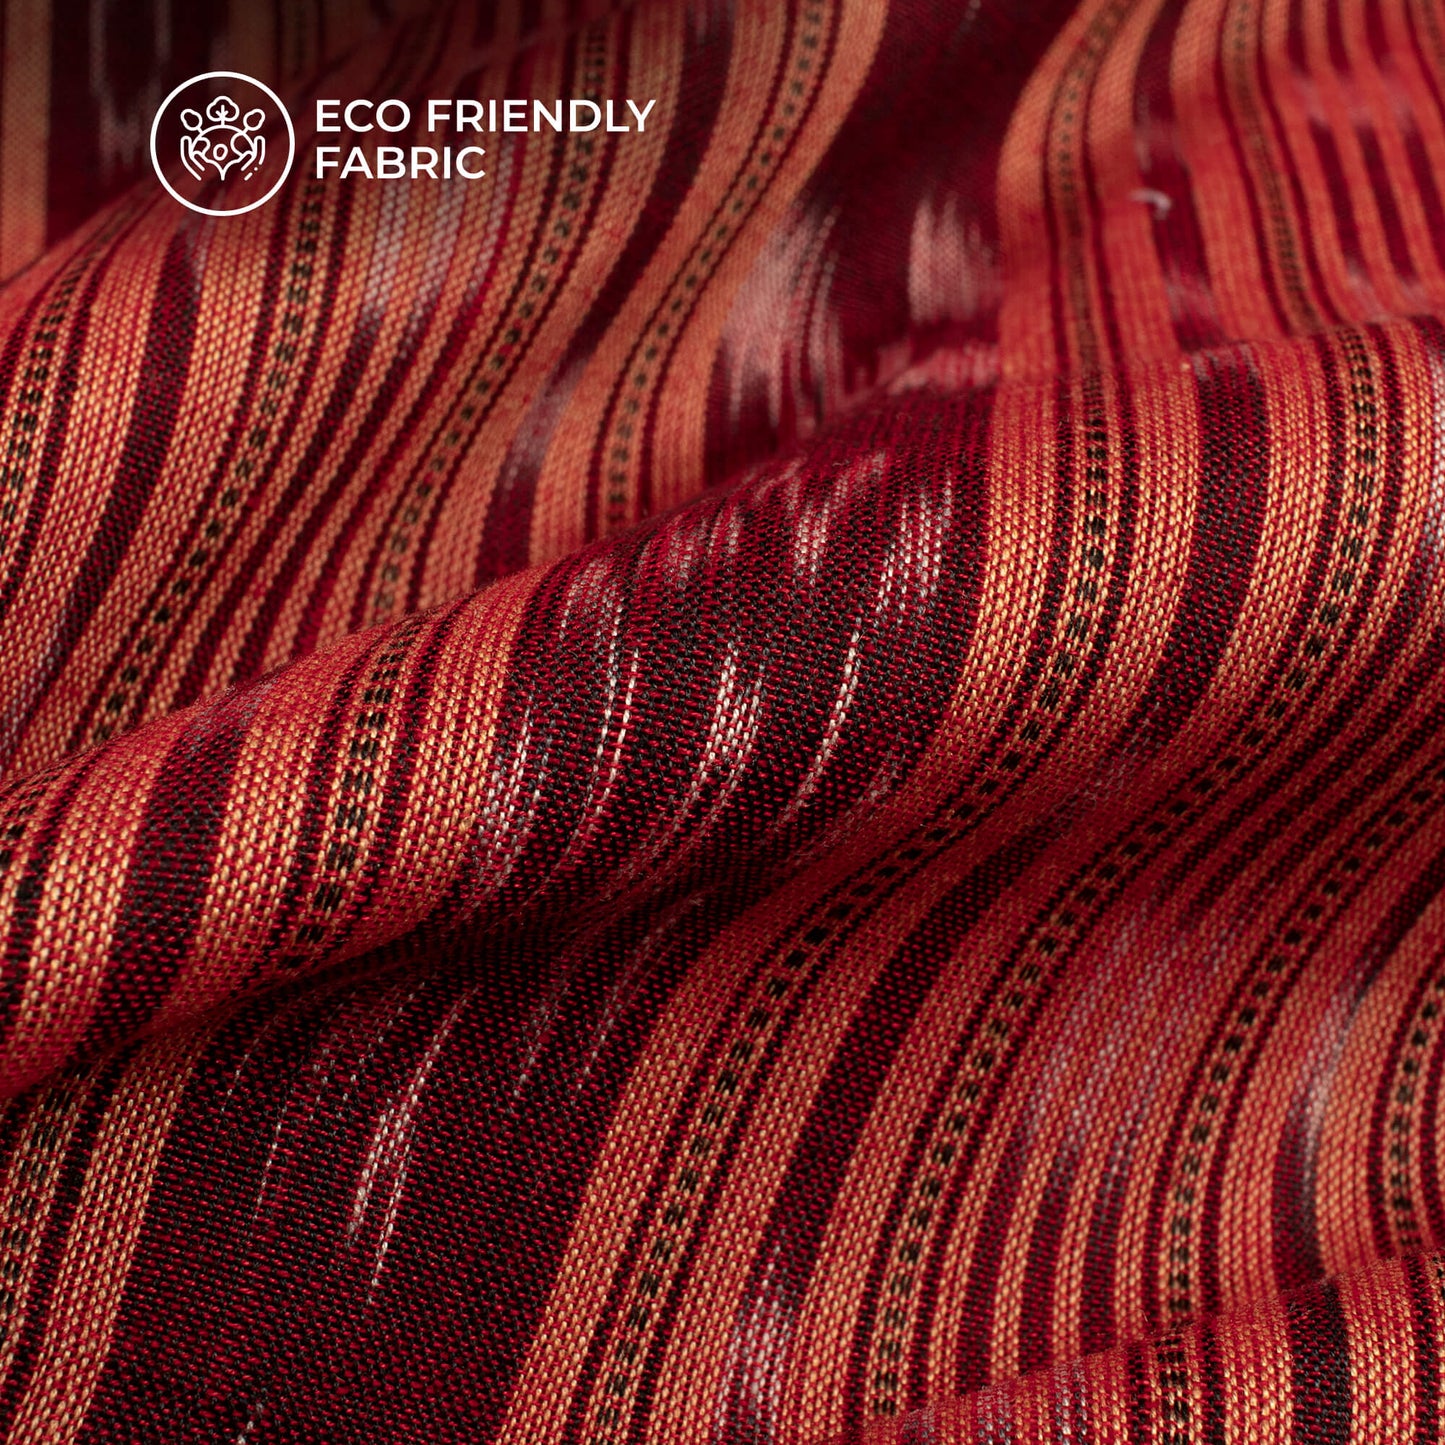 Cantaloupe Orange Stripes Pattern Pre-Washed Sambhalpuri Ikat Cotton Fabric